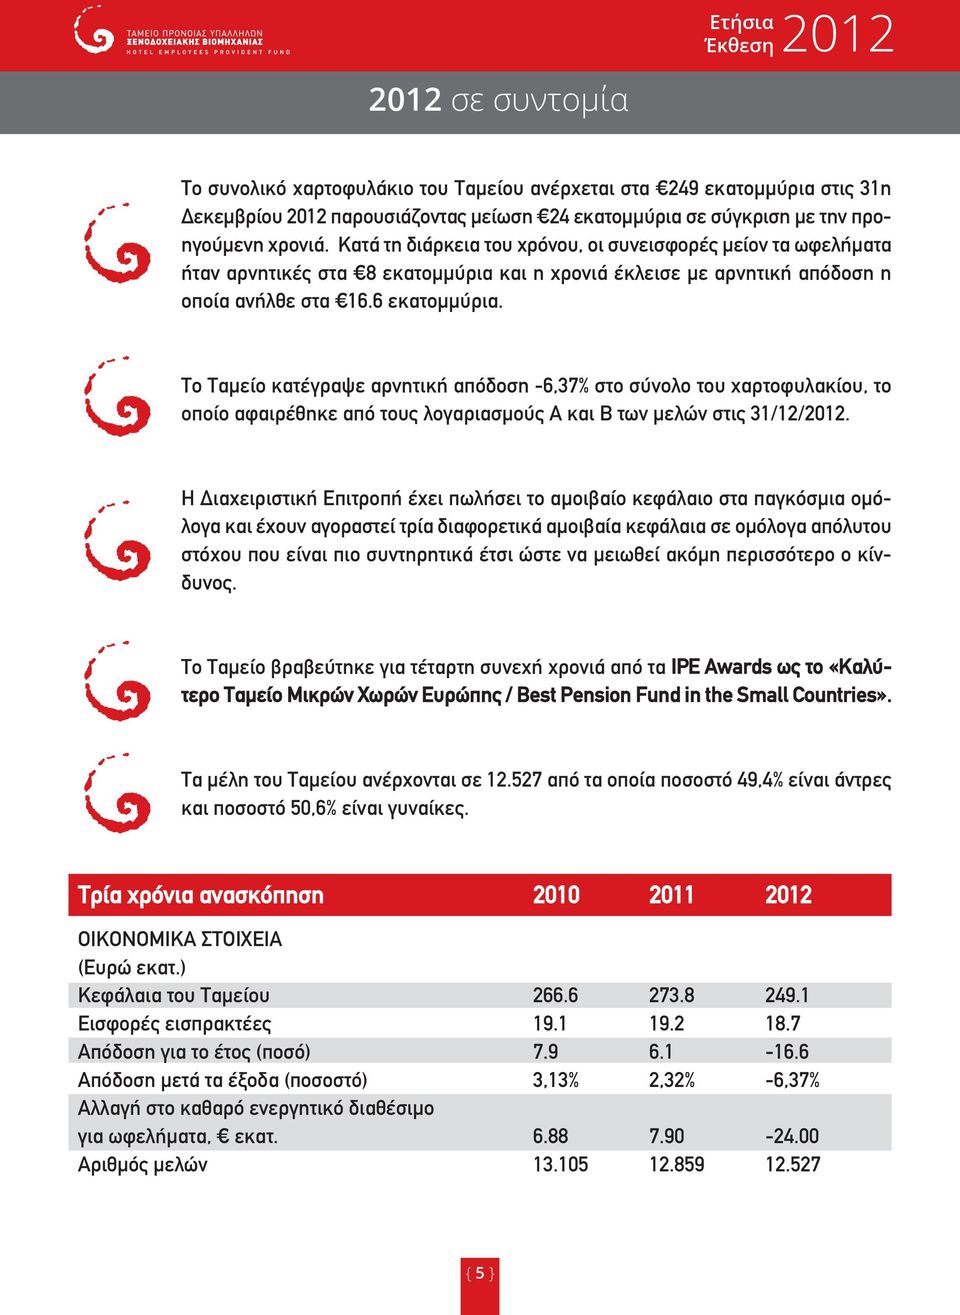 Το Ταµείο κατέγραψε αρνητική απόδοση -6,37% στο σύνολο του χαρτοφυλακίου, το οποίο αφαιρέθηκε από τους λογαριασµούς Α και Β των µελών στις 31/12/2012.